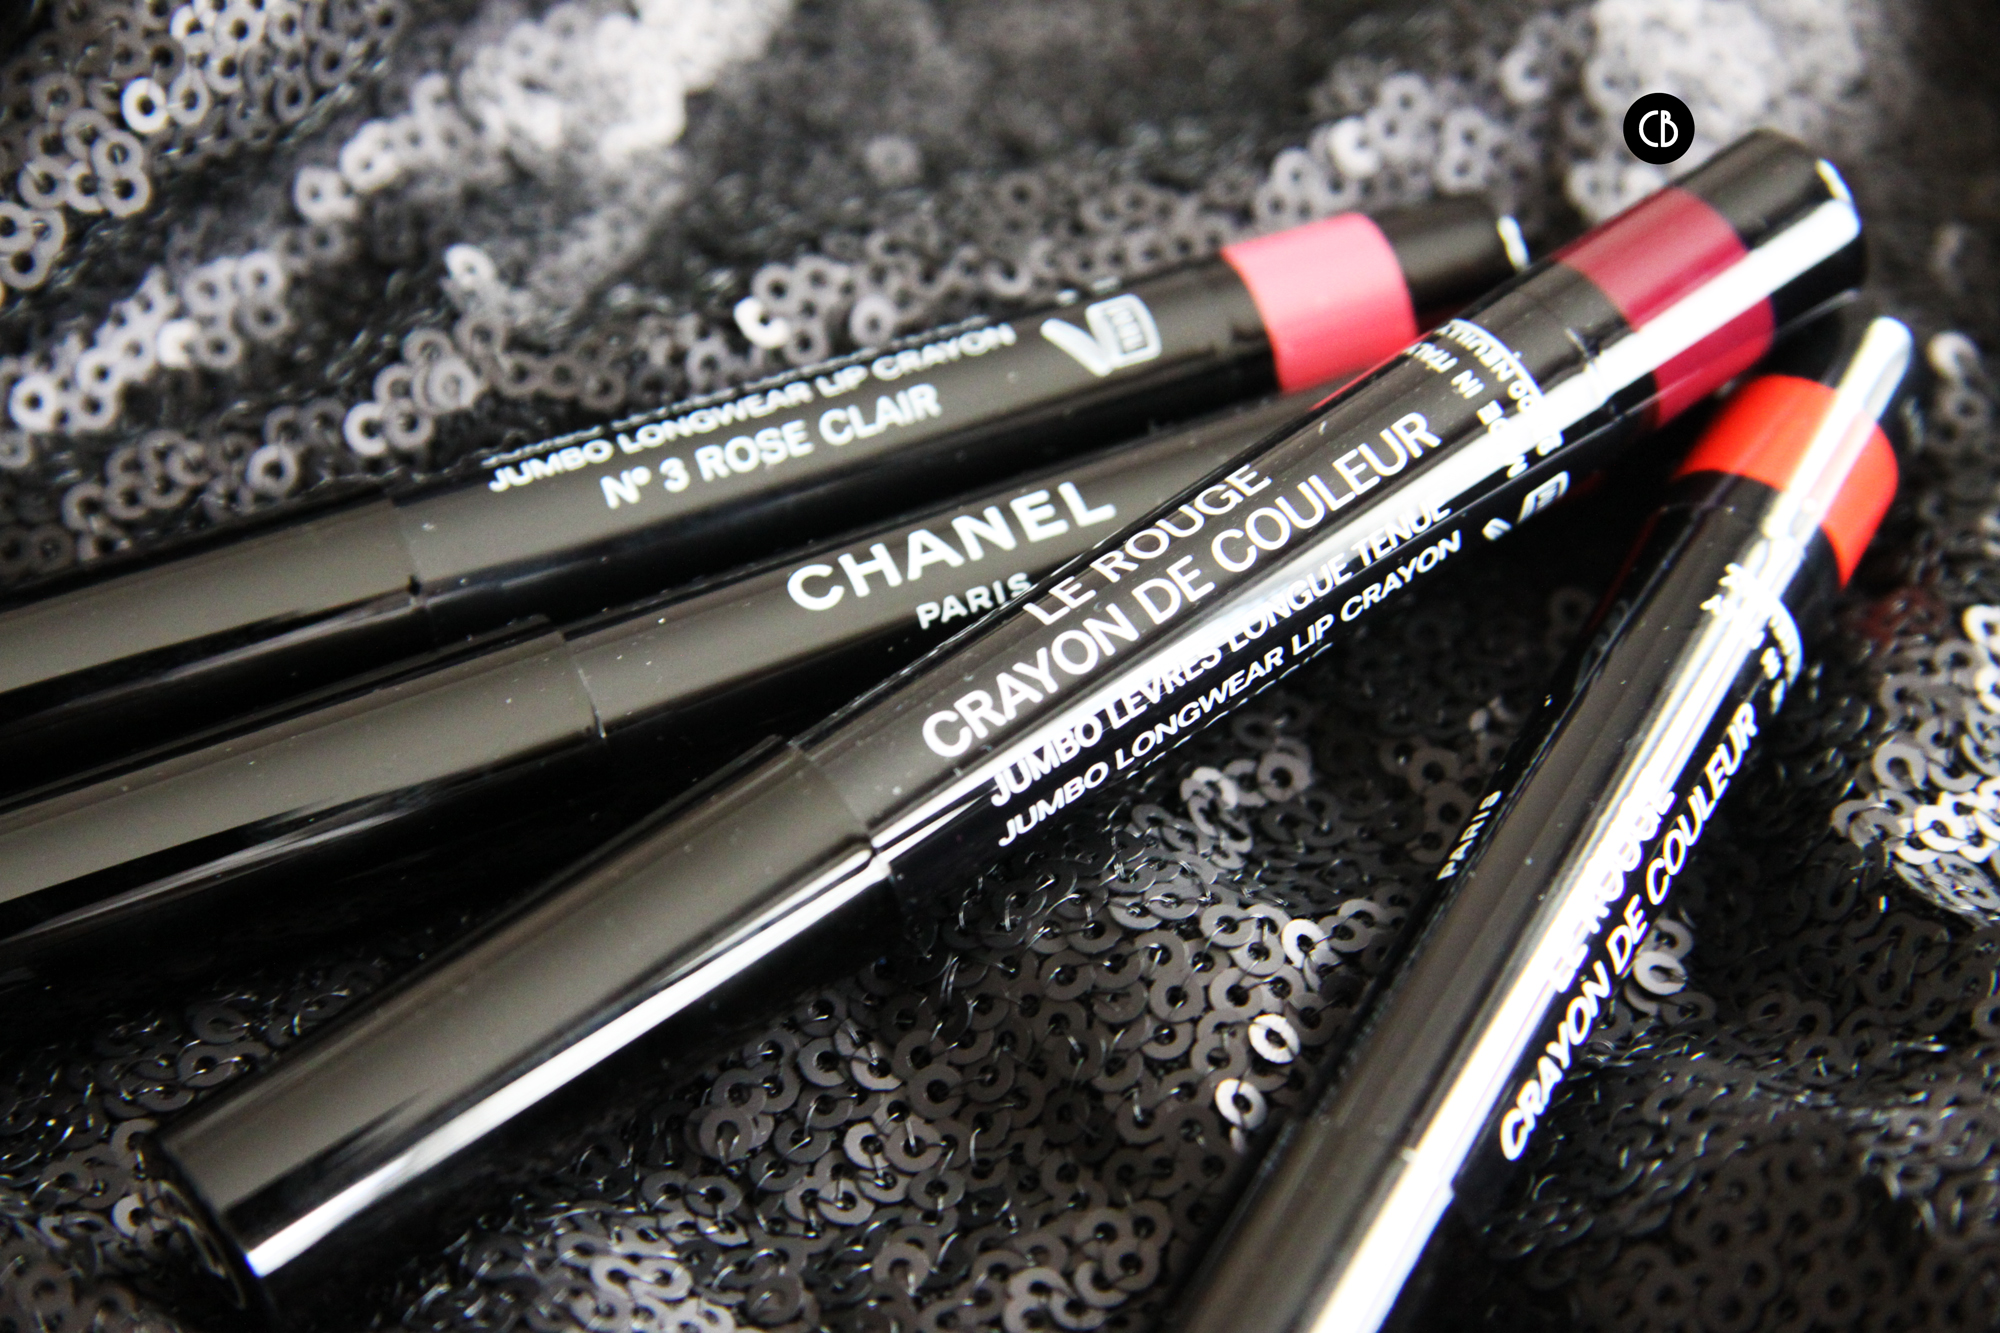 Les Crayon de Couleur Chanel - CherryBlossom